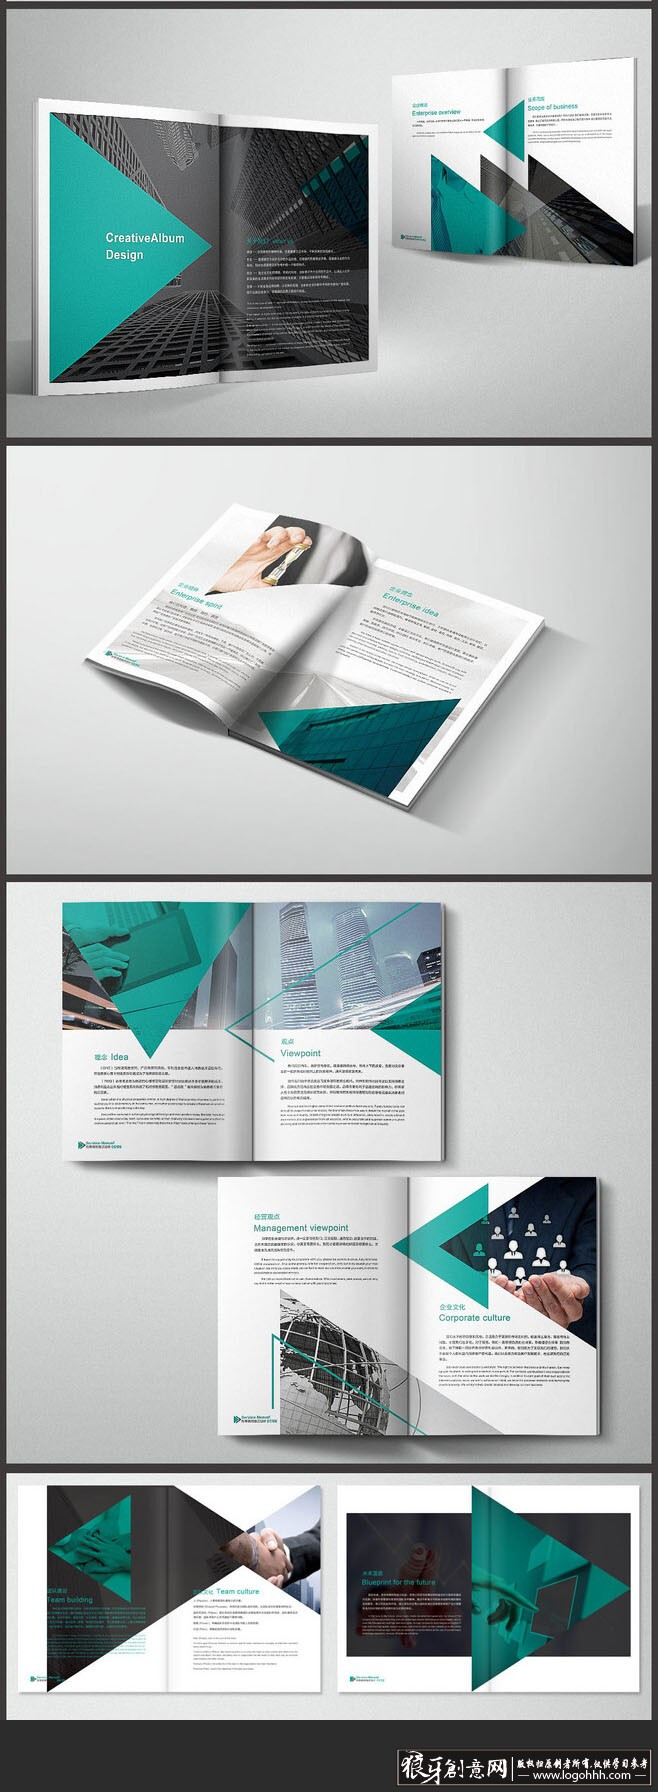 创意画册 公司画册设计欣赏 时尚画册封面设计 企业画册 企业宣传册